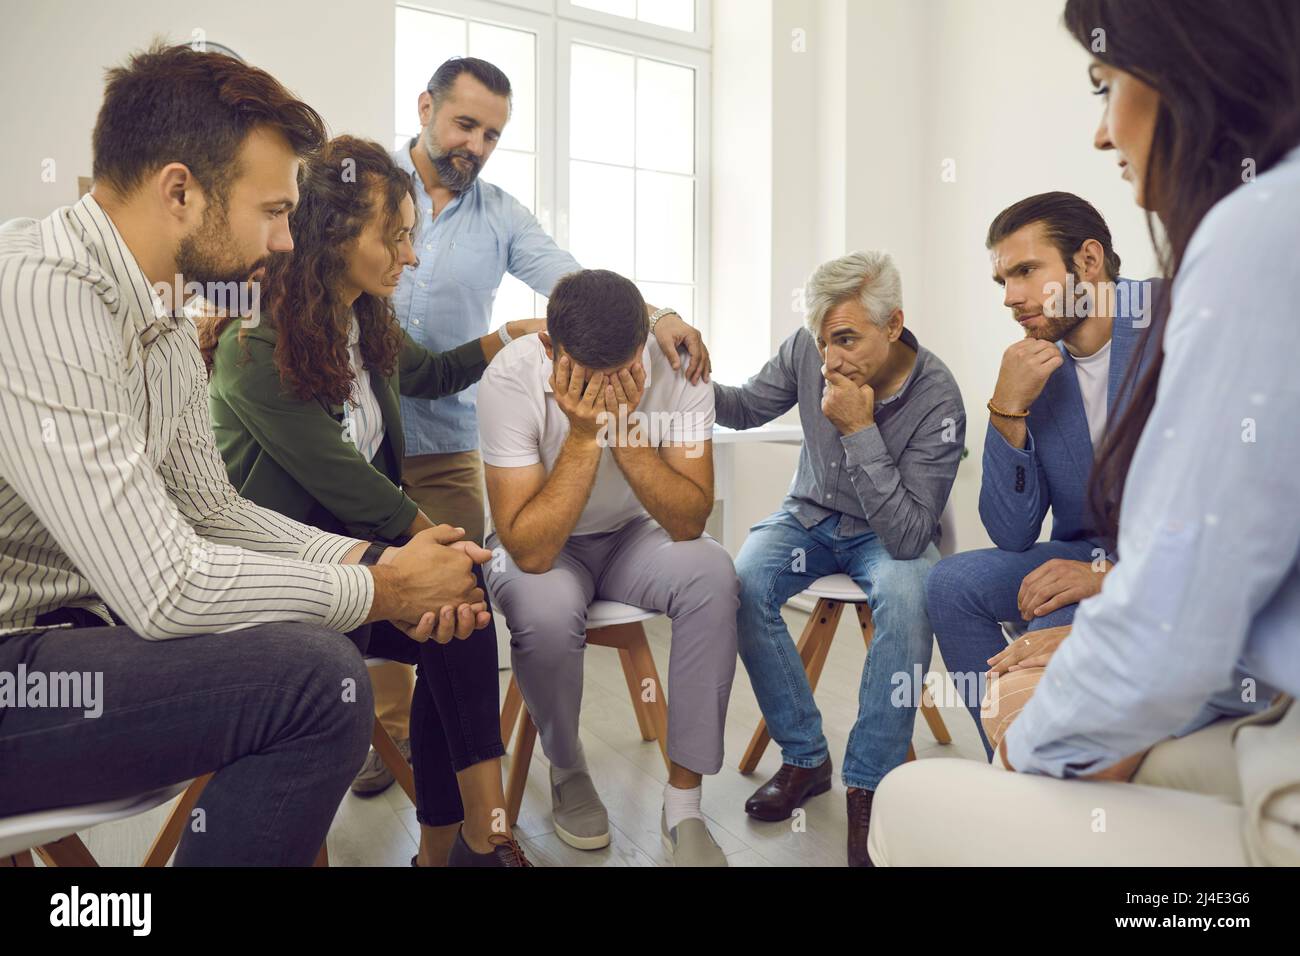 Les personnes qui soutiennent et réconfortent un jeune homme qui pleure pendant une séance de thérapie de groupe Banque D'Images